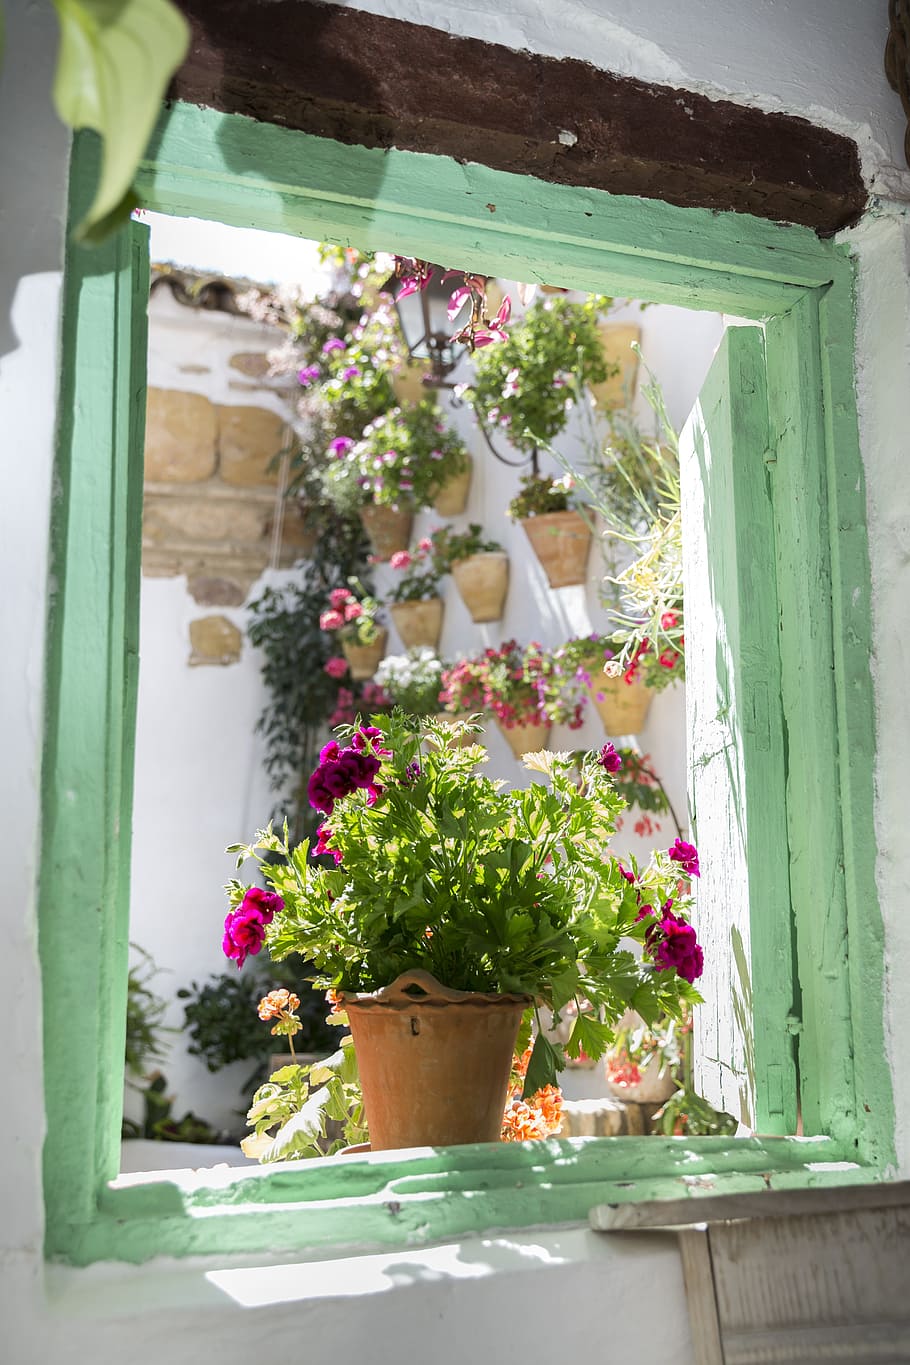 Vaso de flores, Planta, Folhas, Verde, planta em vaso, flor, flores, pátios de córdoba, córdoba, espanha